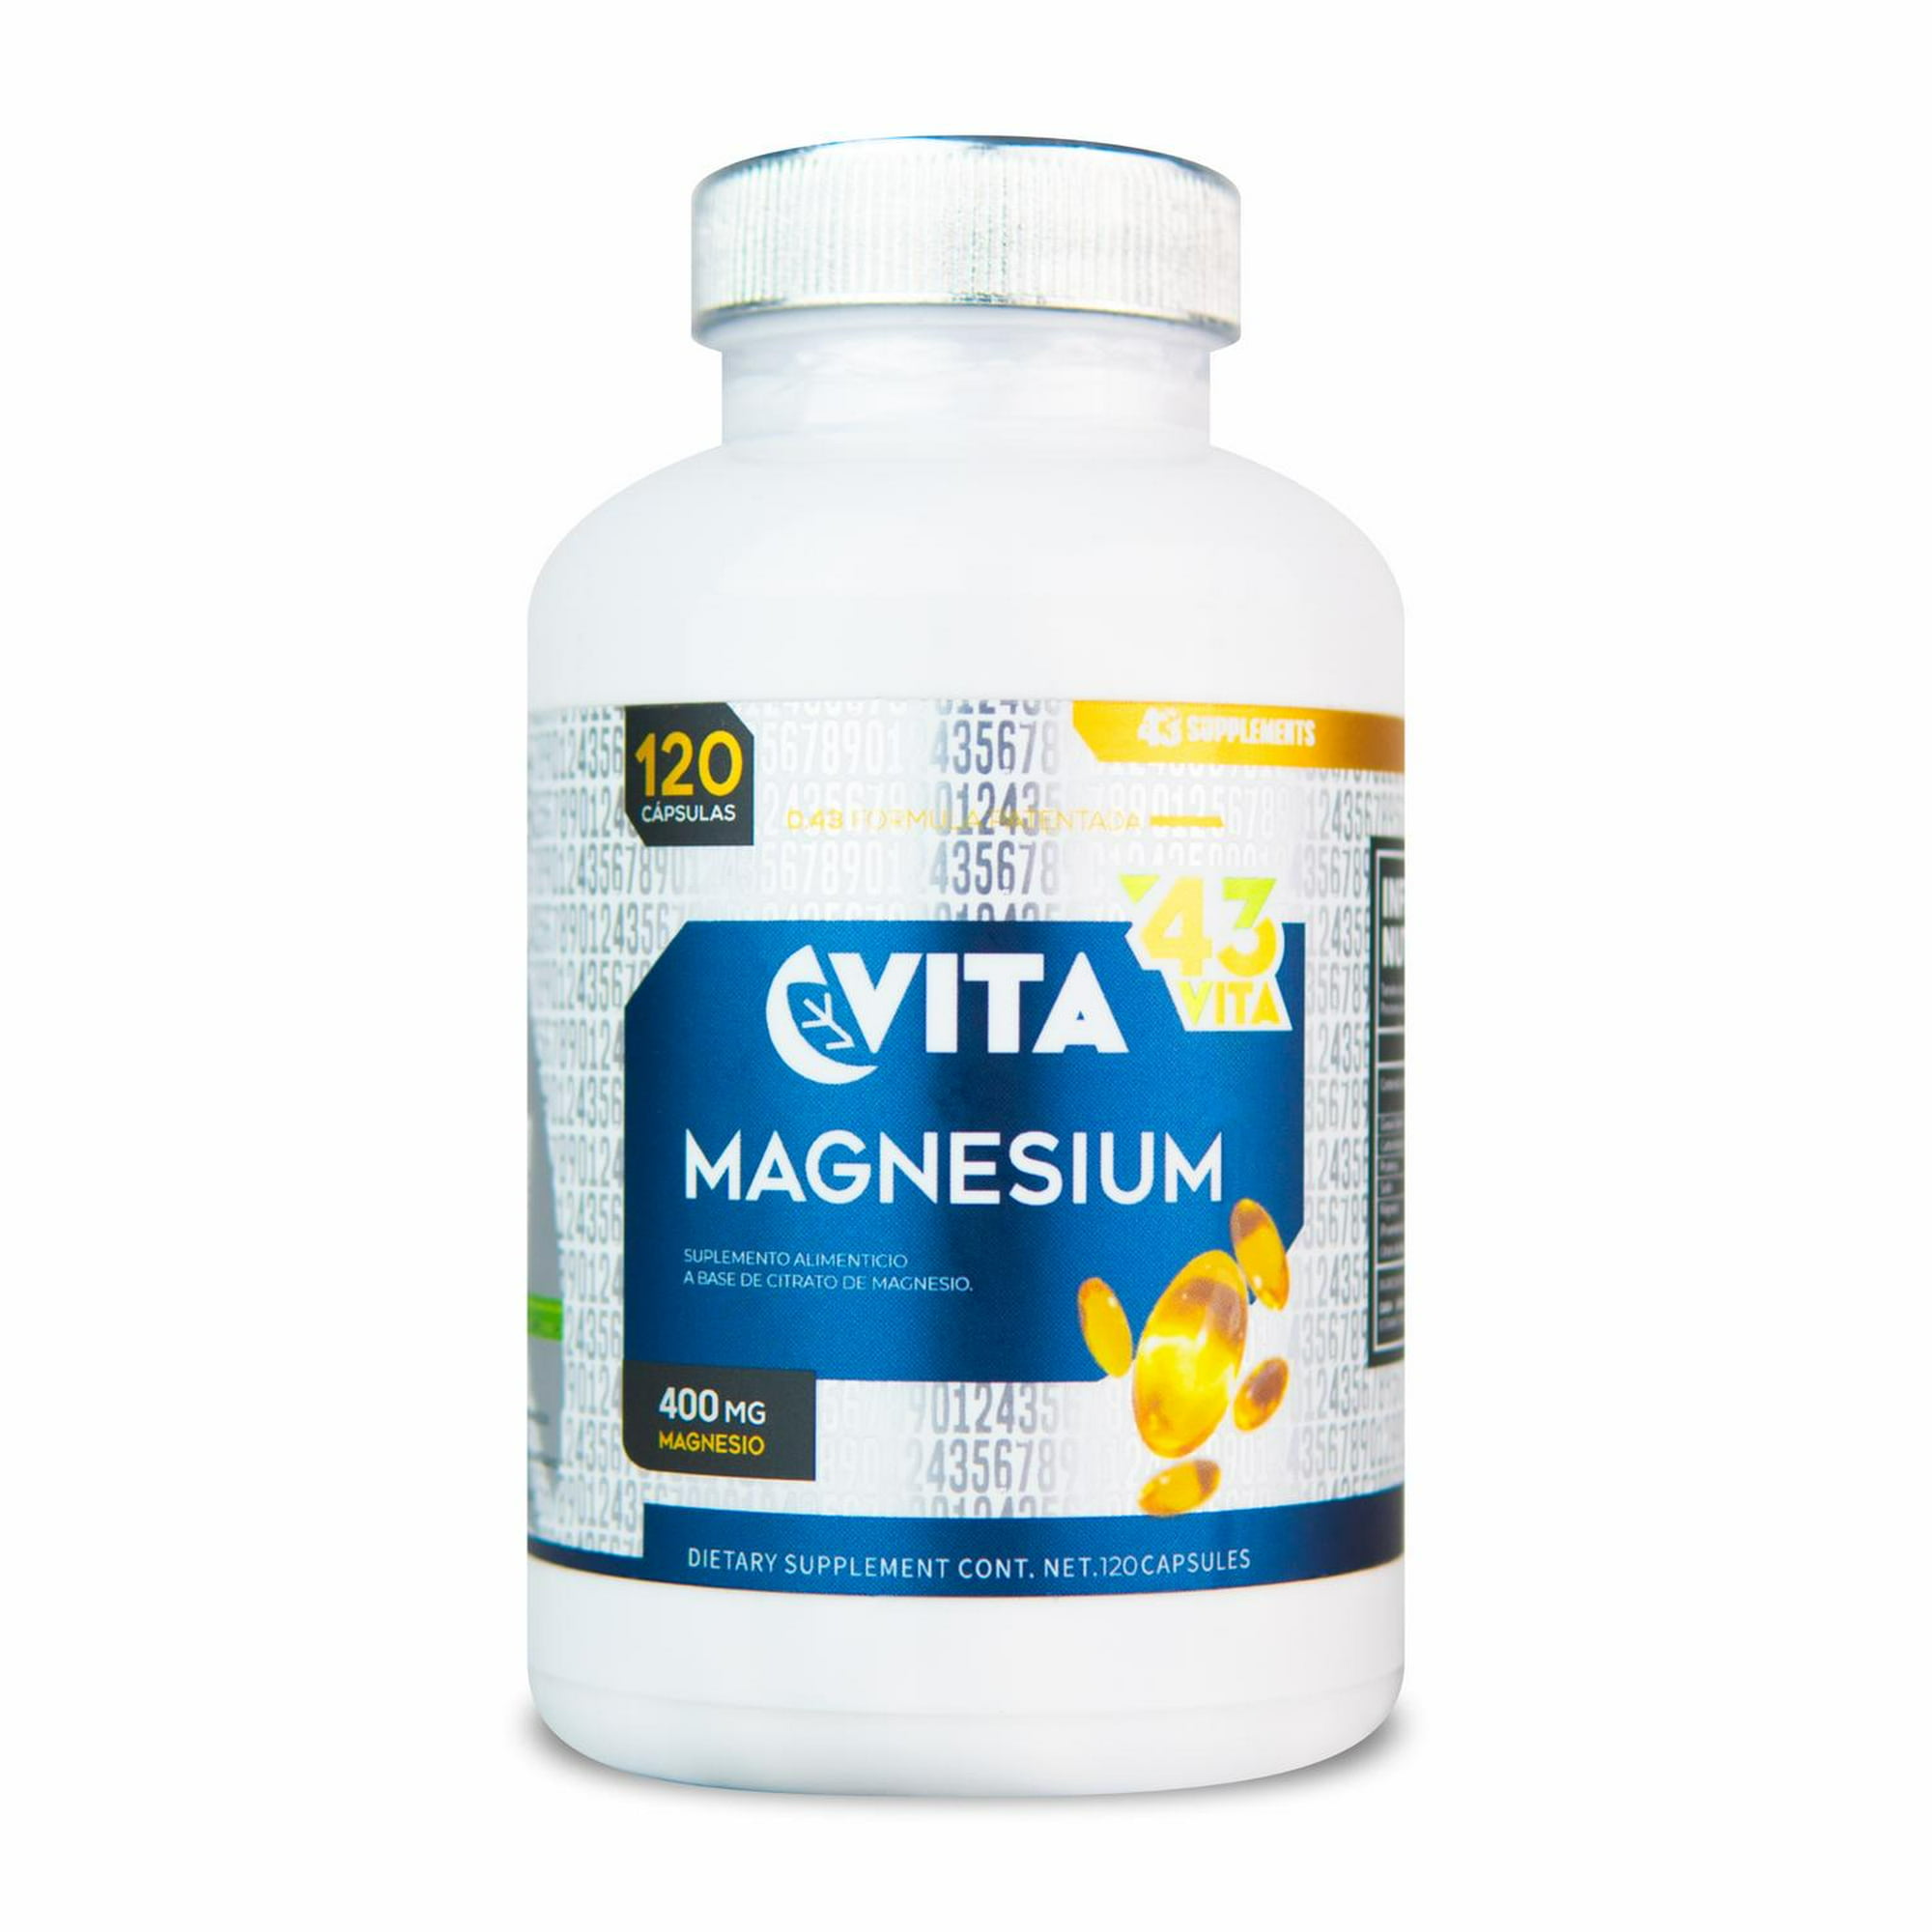 Citrato de magnesio 120 caps vita 43 supplements